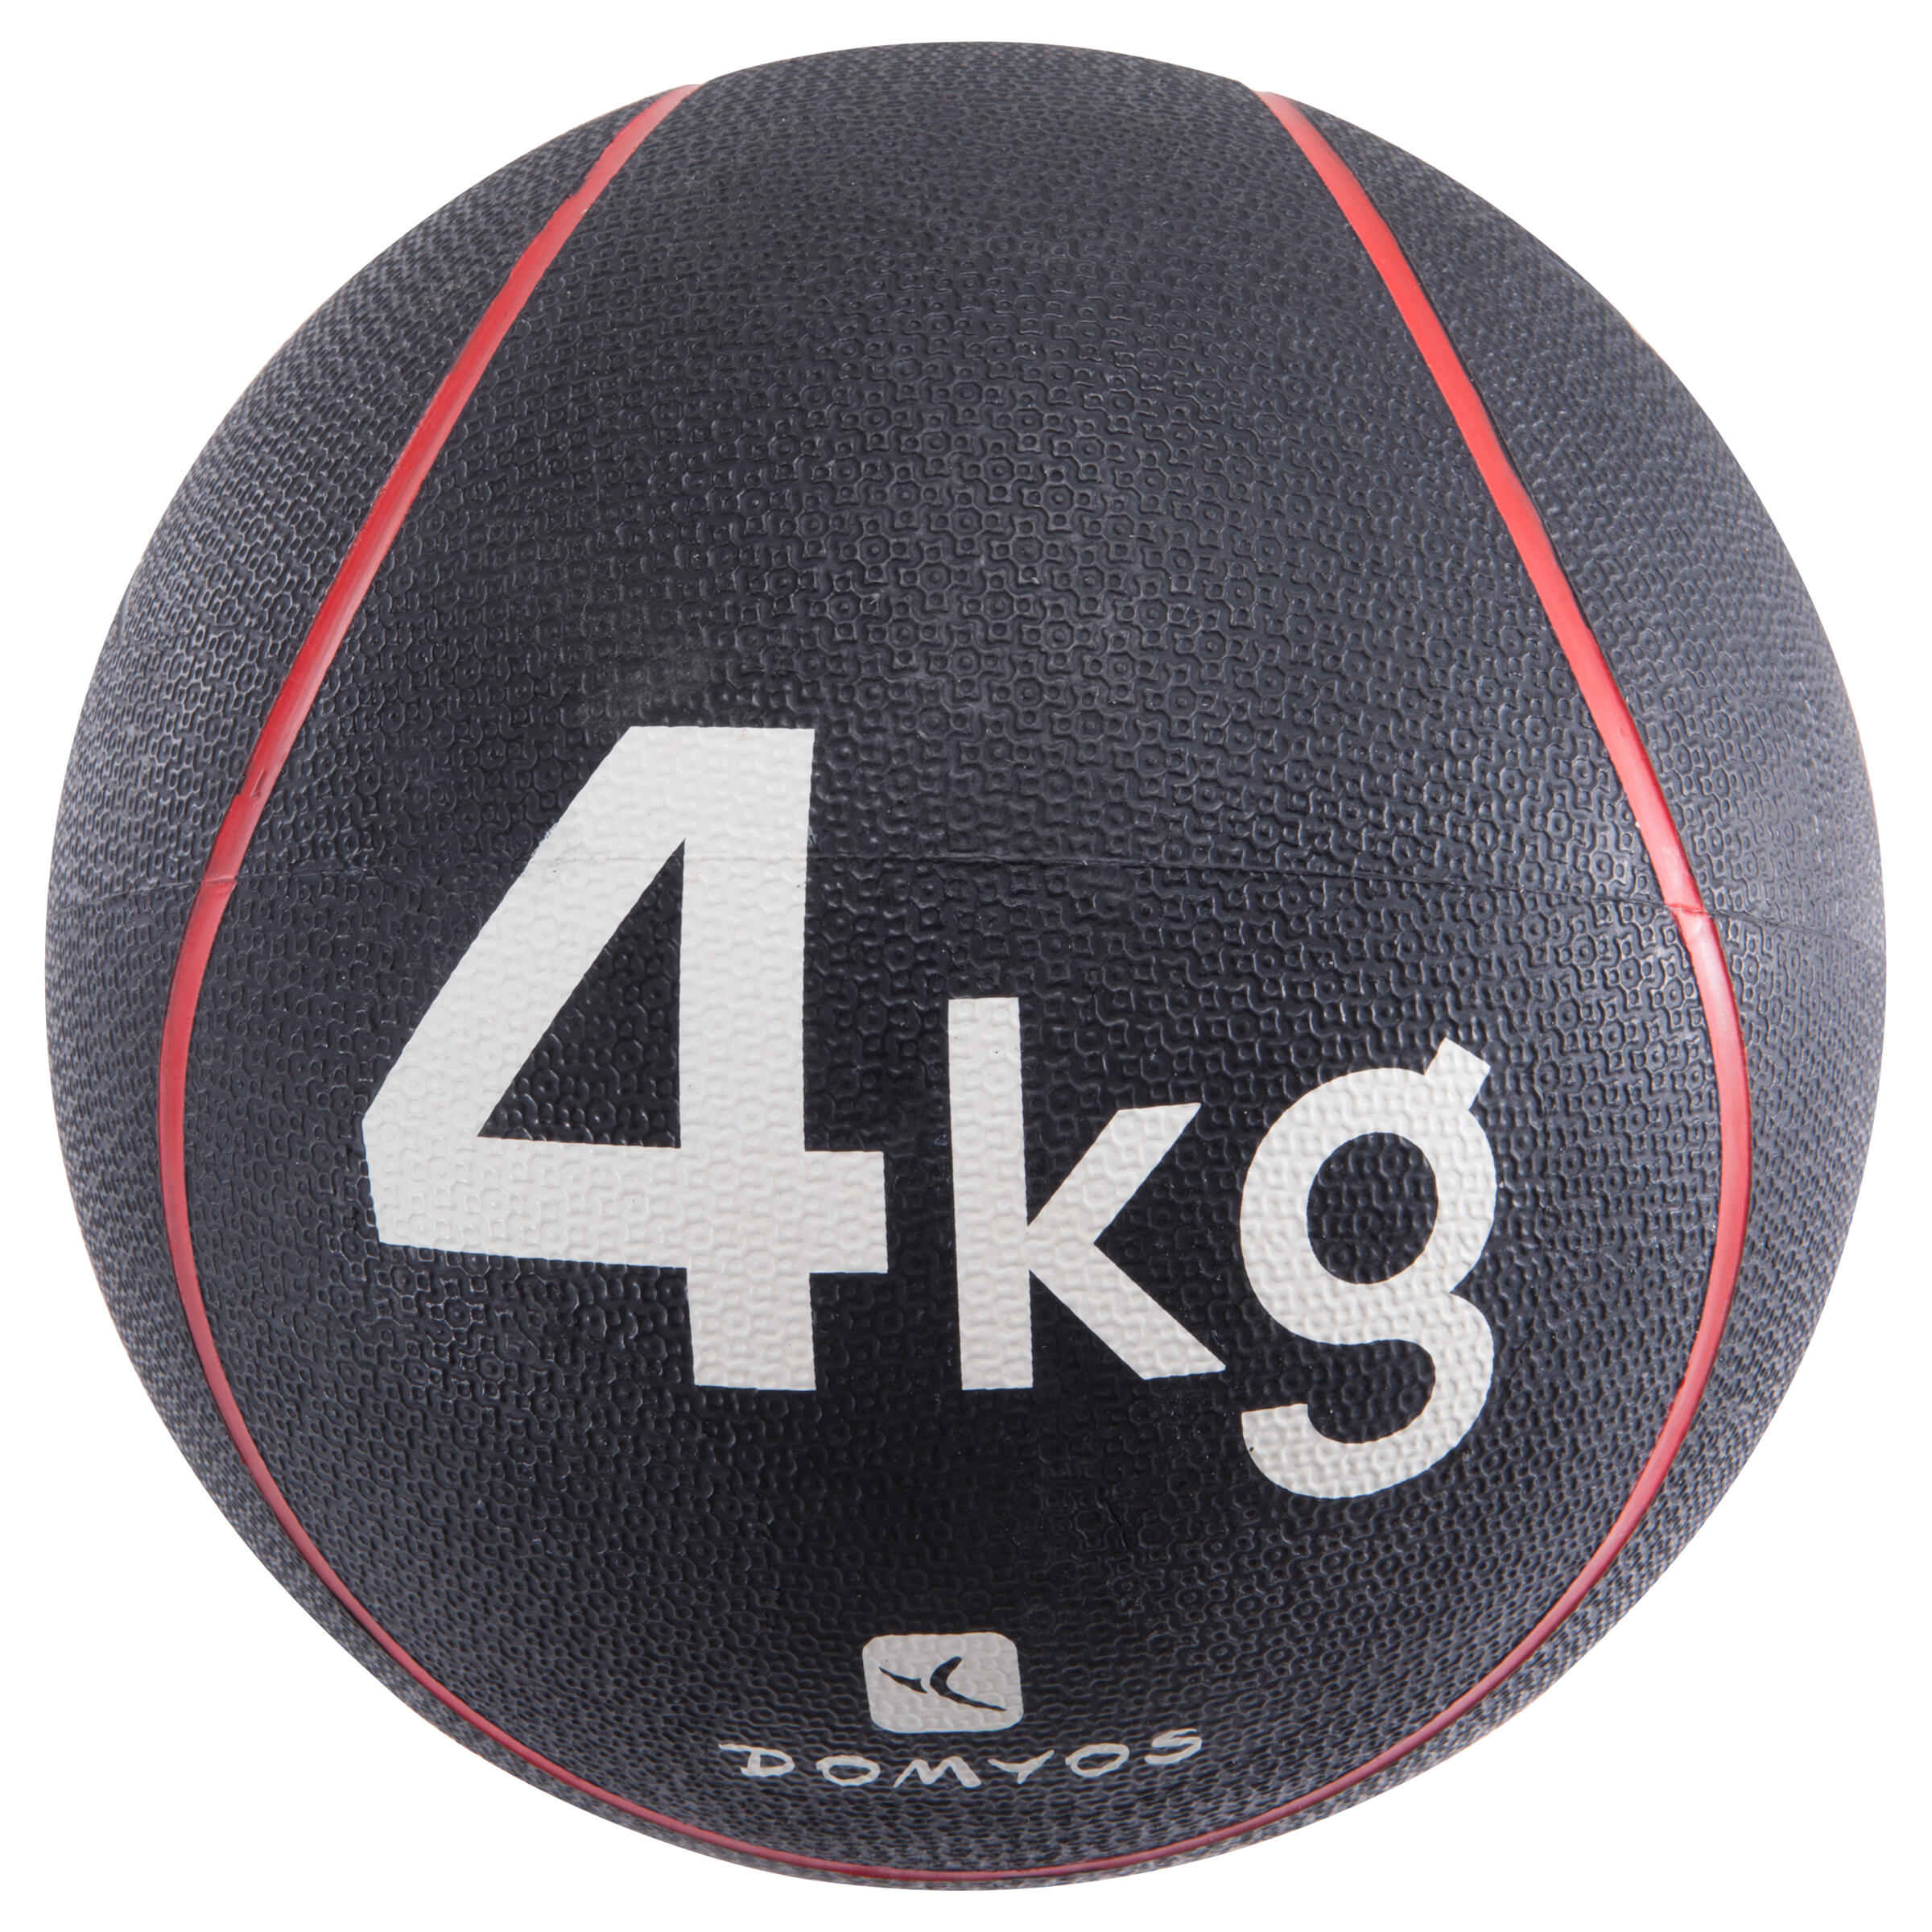 ราคาถูกที่สุด ลูกบอลน้ำหนักรุ่น ToneBall 4 กก./ เส้นผ่านศูนย์กลาง 24 ซม.